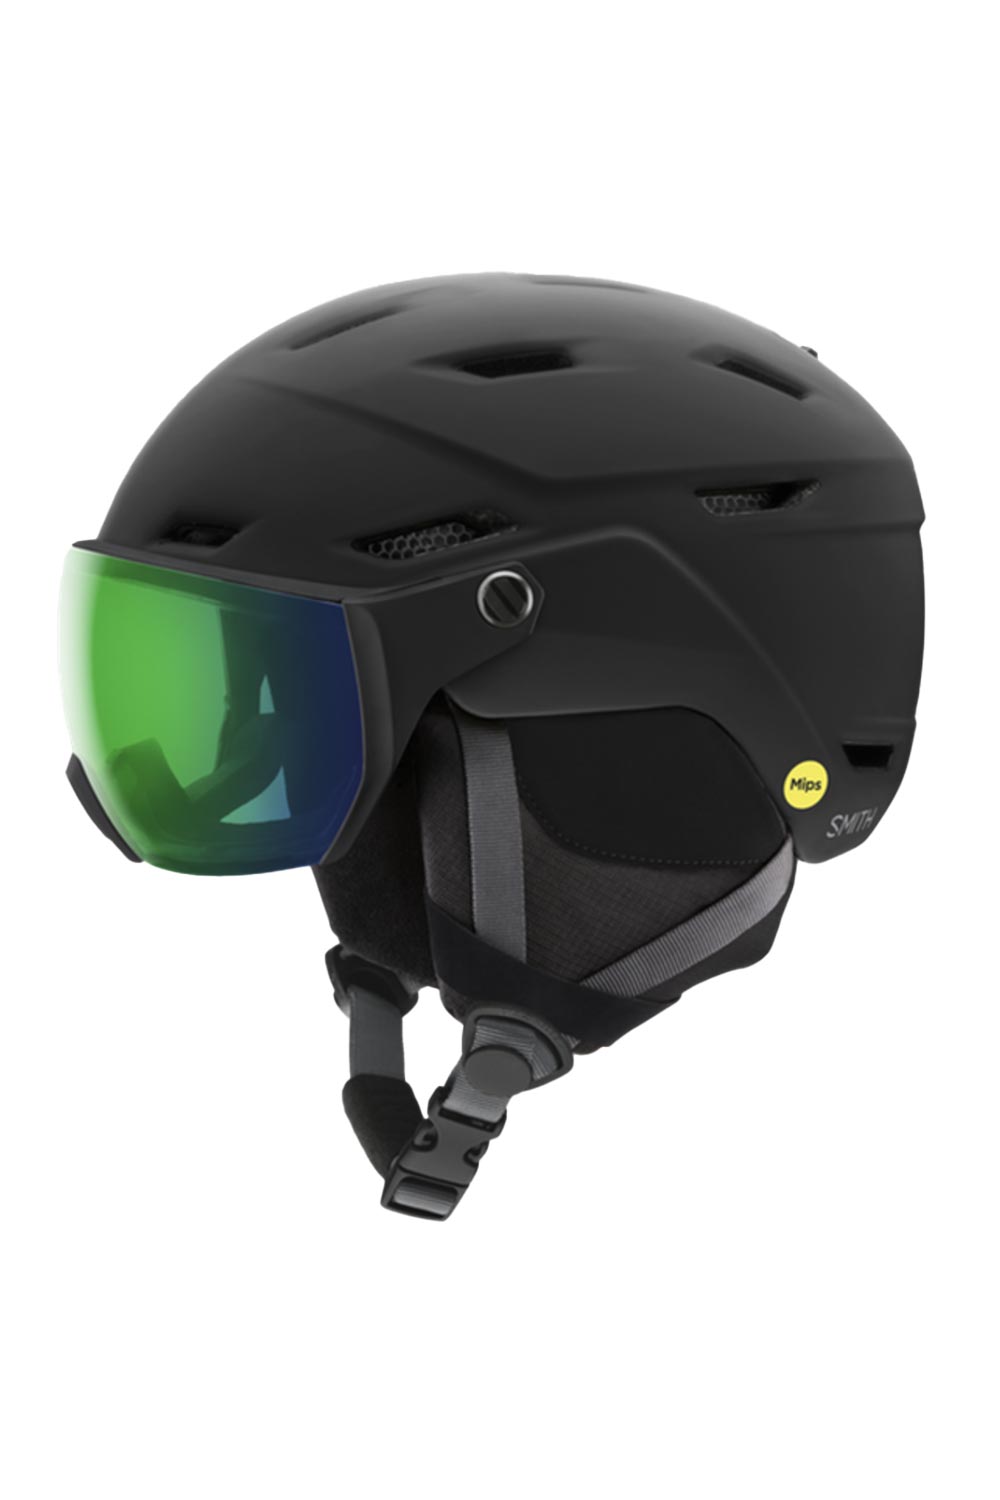 Smith Survey ski helmet with visor, black helmet green lens